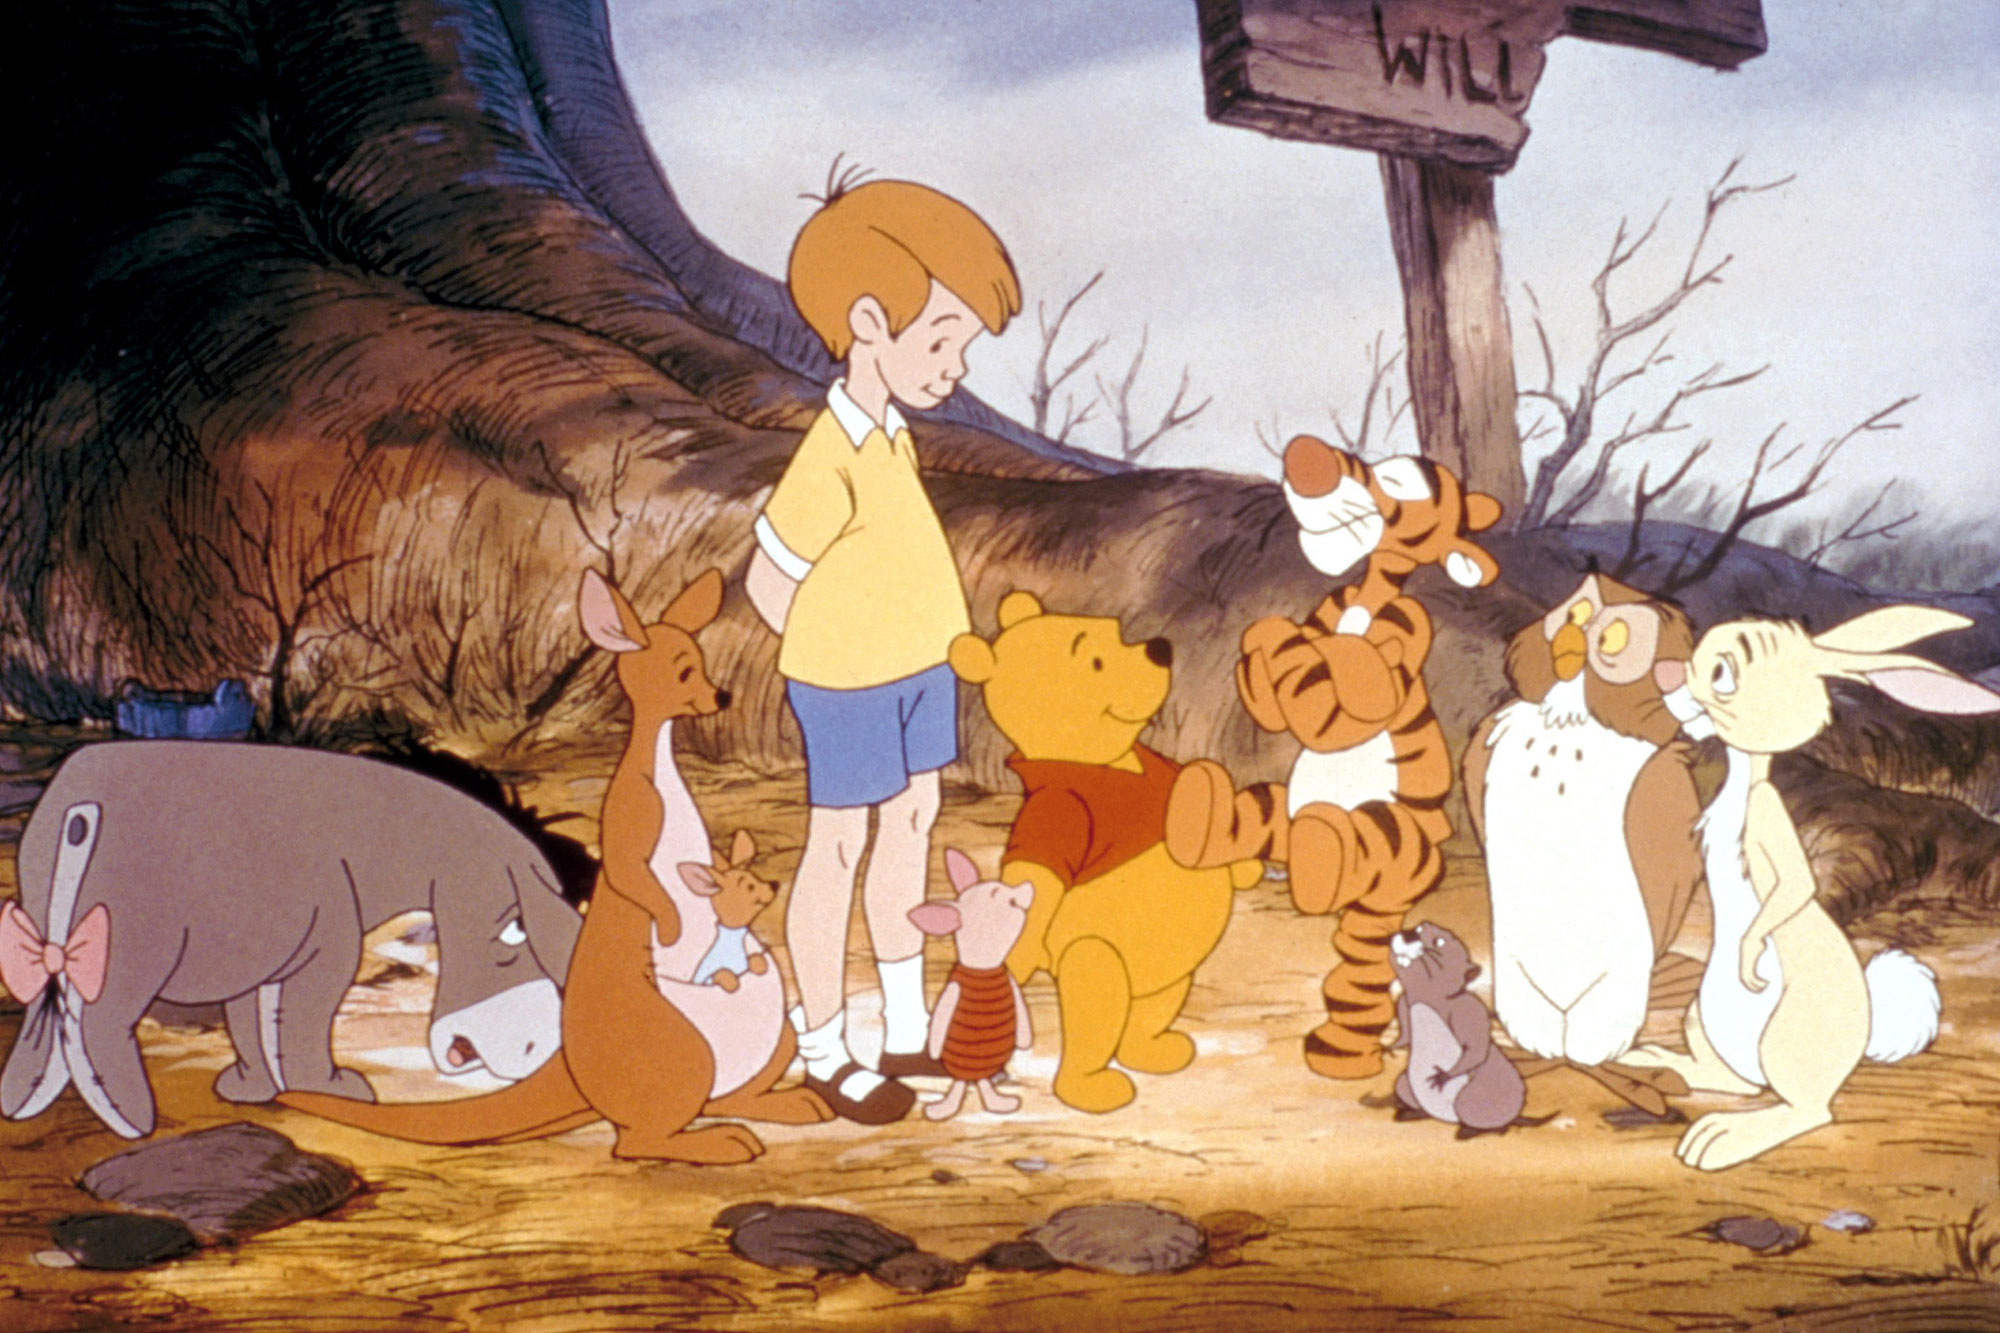 Winnie the pooh adventures. Приключения Винни пух Уолт Дисней. Приключения Винни пуха Дисней 1977. Винни пух и Кристофер Робин.